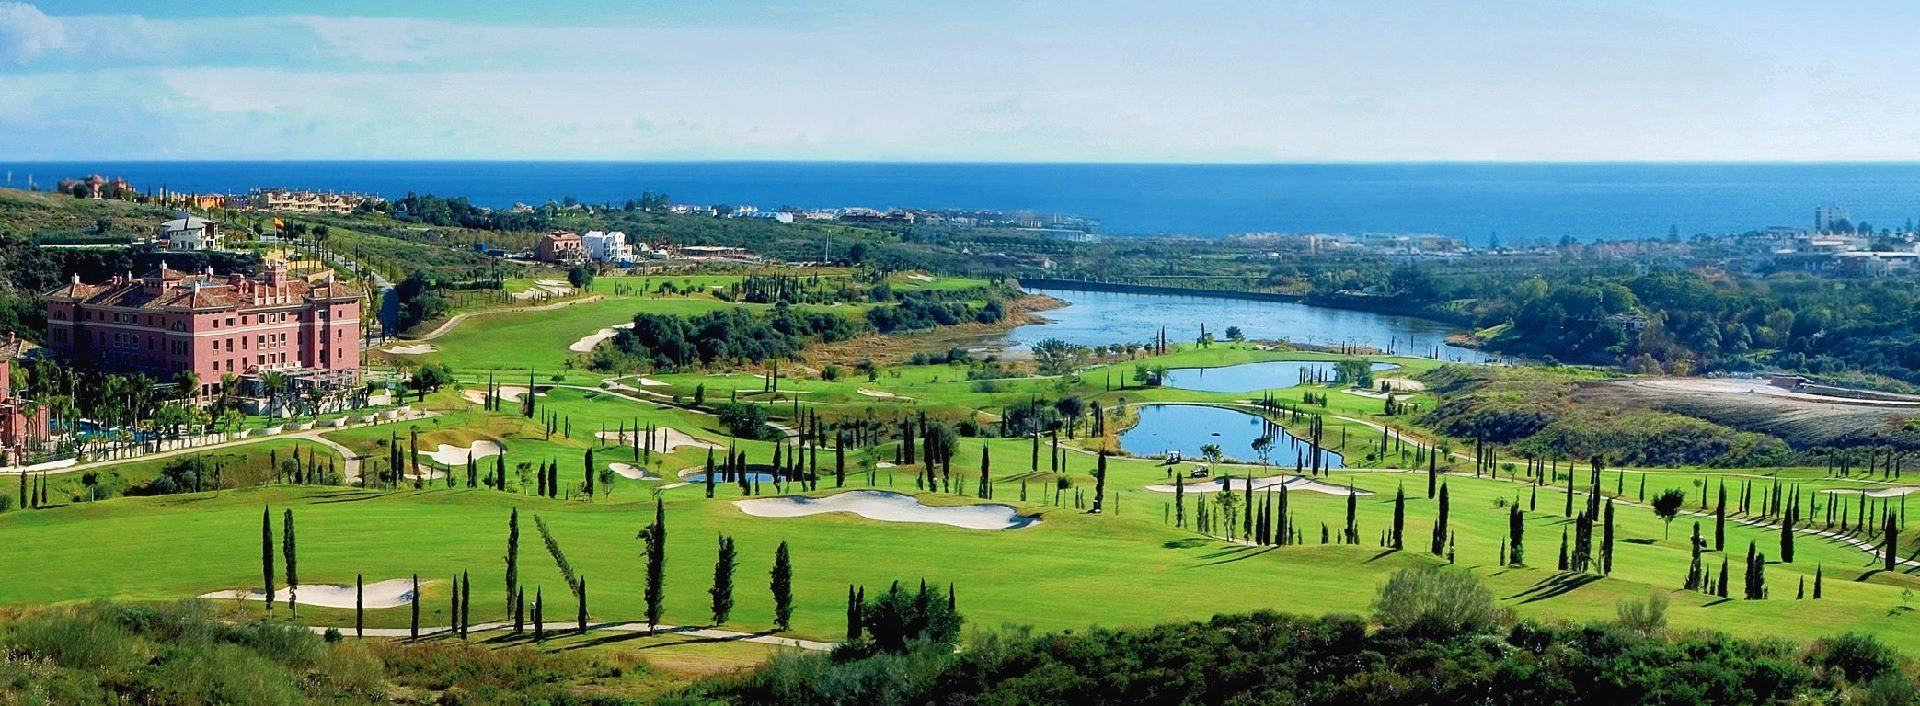 Bienvenido a Los Flamingos Golf - Marbella Unique Properties en Puerto Banus